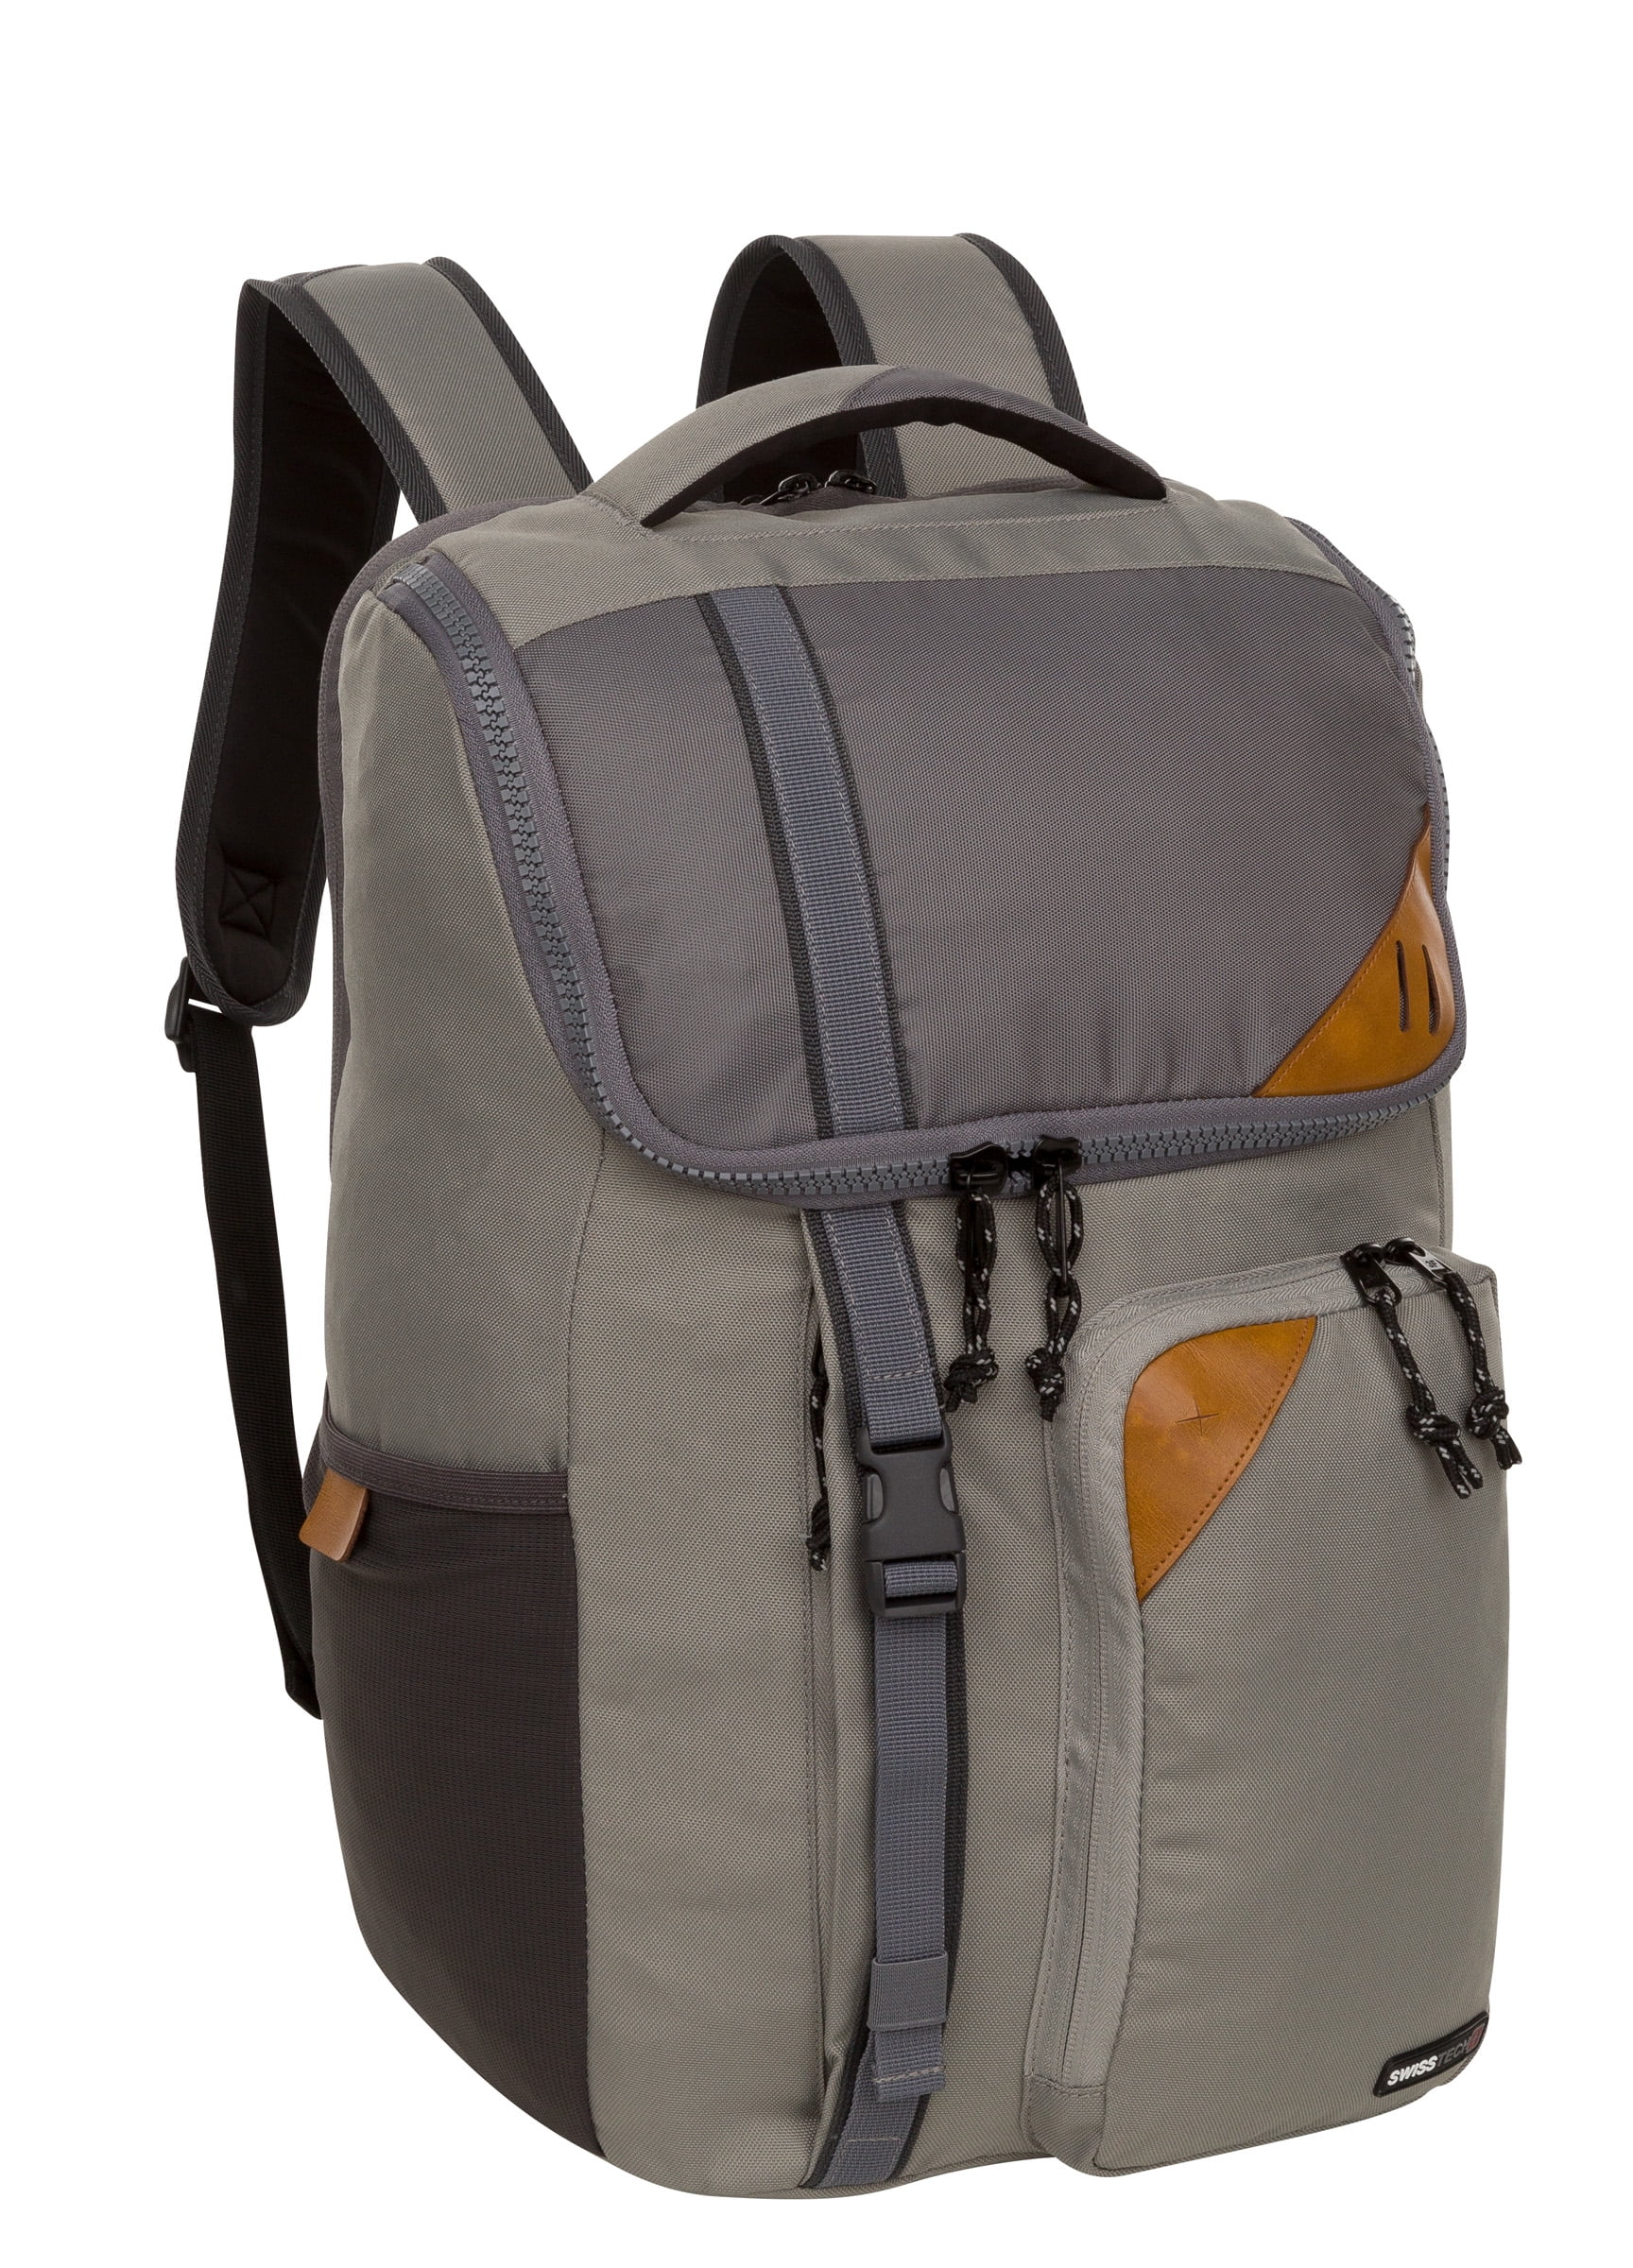 Black La Tzoumaz Swiss Tech School Backpack Awesome for sale online 